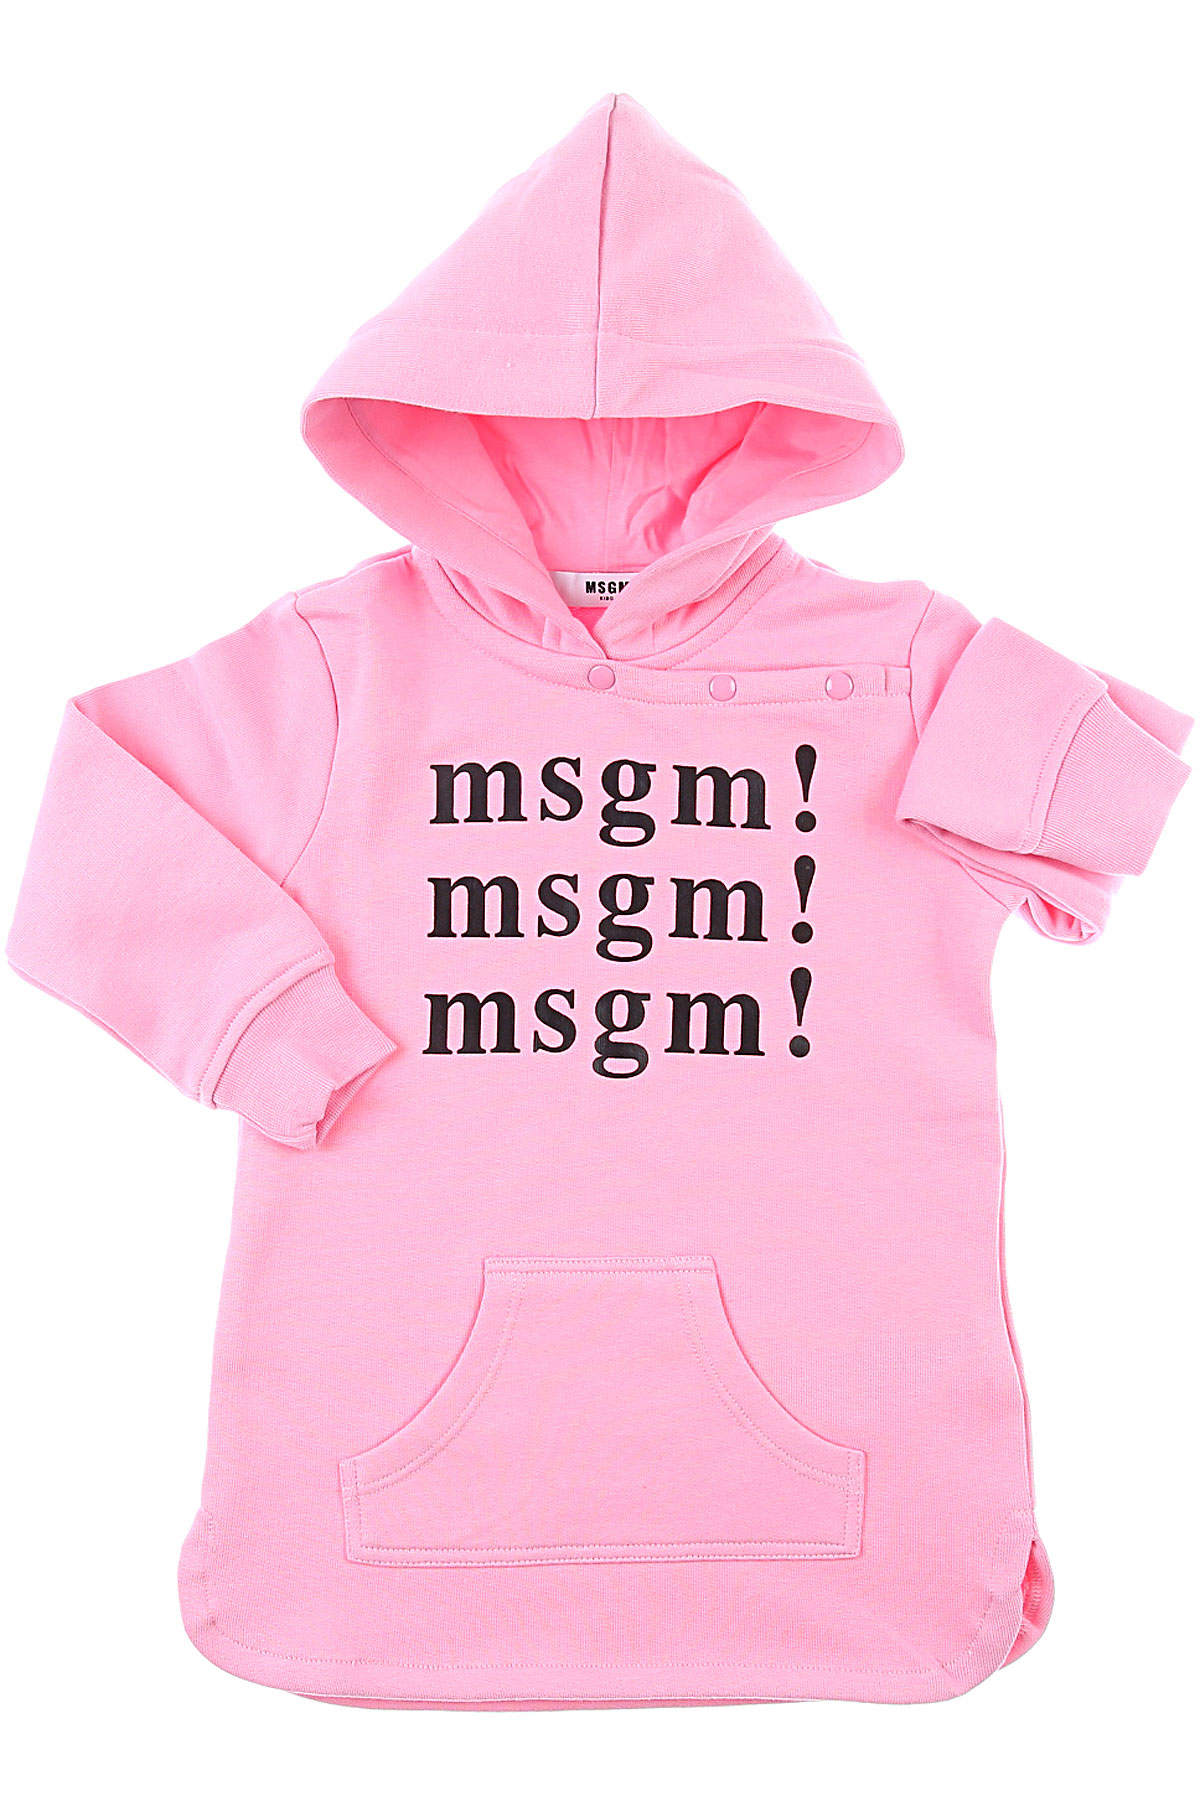 MSGM Baby Sweatshirt & Kapuzenpullover für Mädchen Günstig im Sale, Pink, Baumwolle, 2017, 12M 2Y 3Y